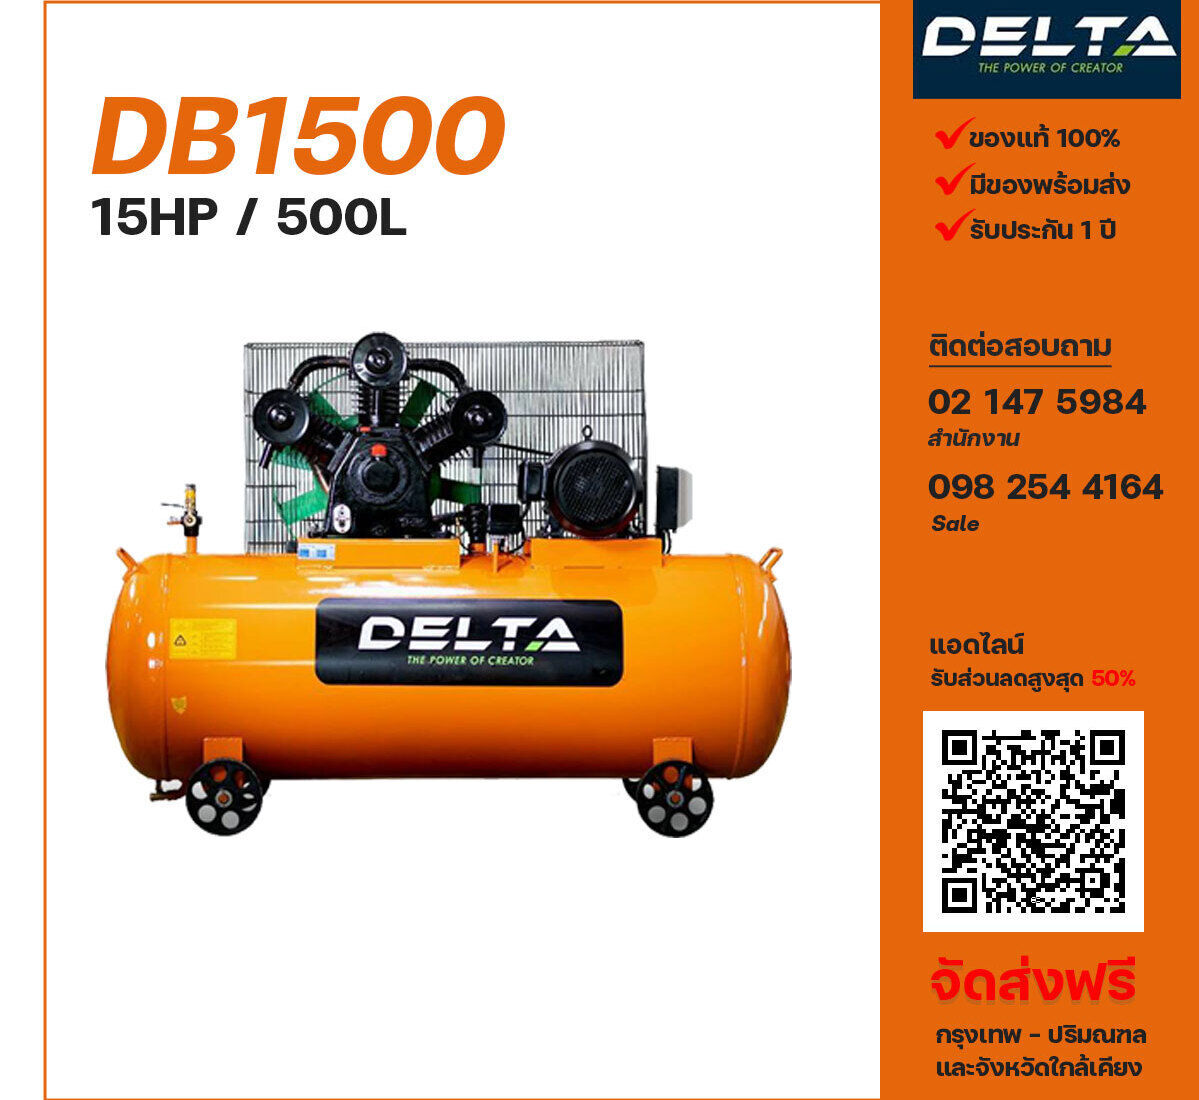 ปั๊มลมเดลต้า DELTA DB1500 380V ปั๊มลมลูกสูบ ขนาด 3 สูบ 15 แรงม้า 500 ลิตร DELTA พร้อมมอเตอร์ ไฟ 380V ส่งฟรี กรุงเทพฯ-ปริมณฑล รับประกัน 1 ปี